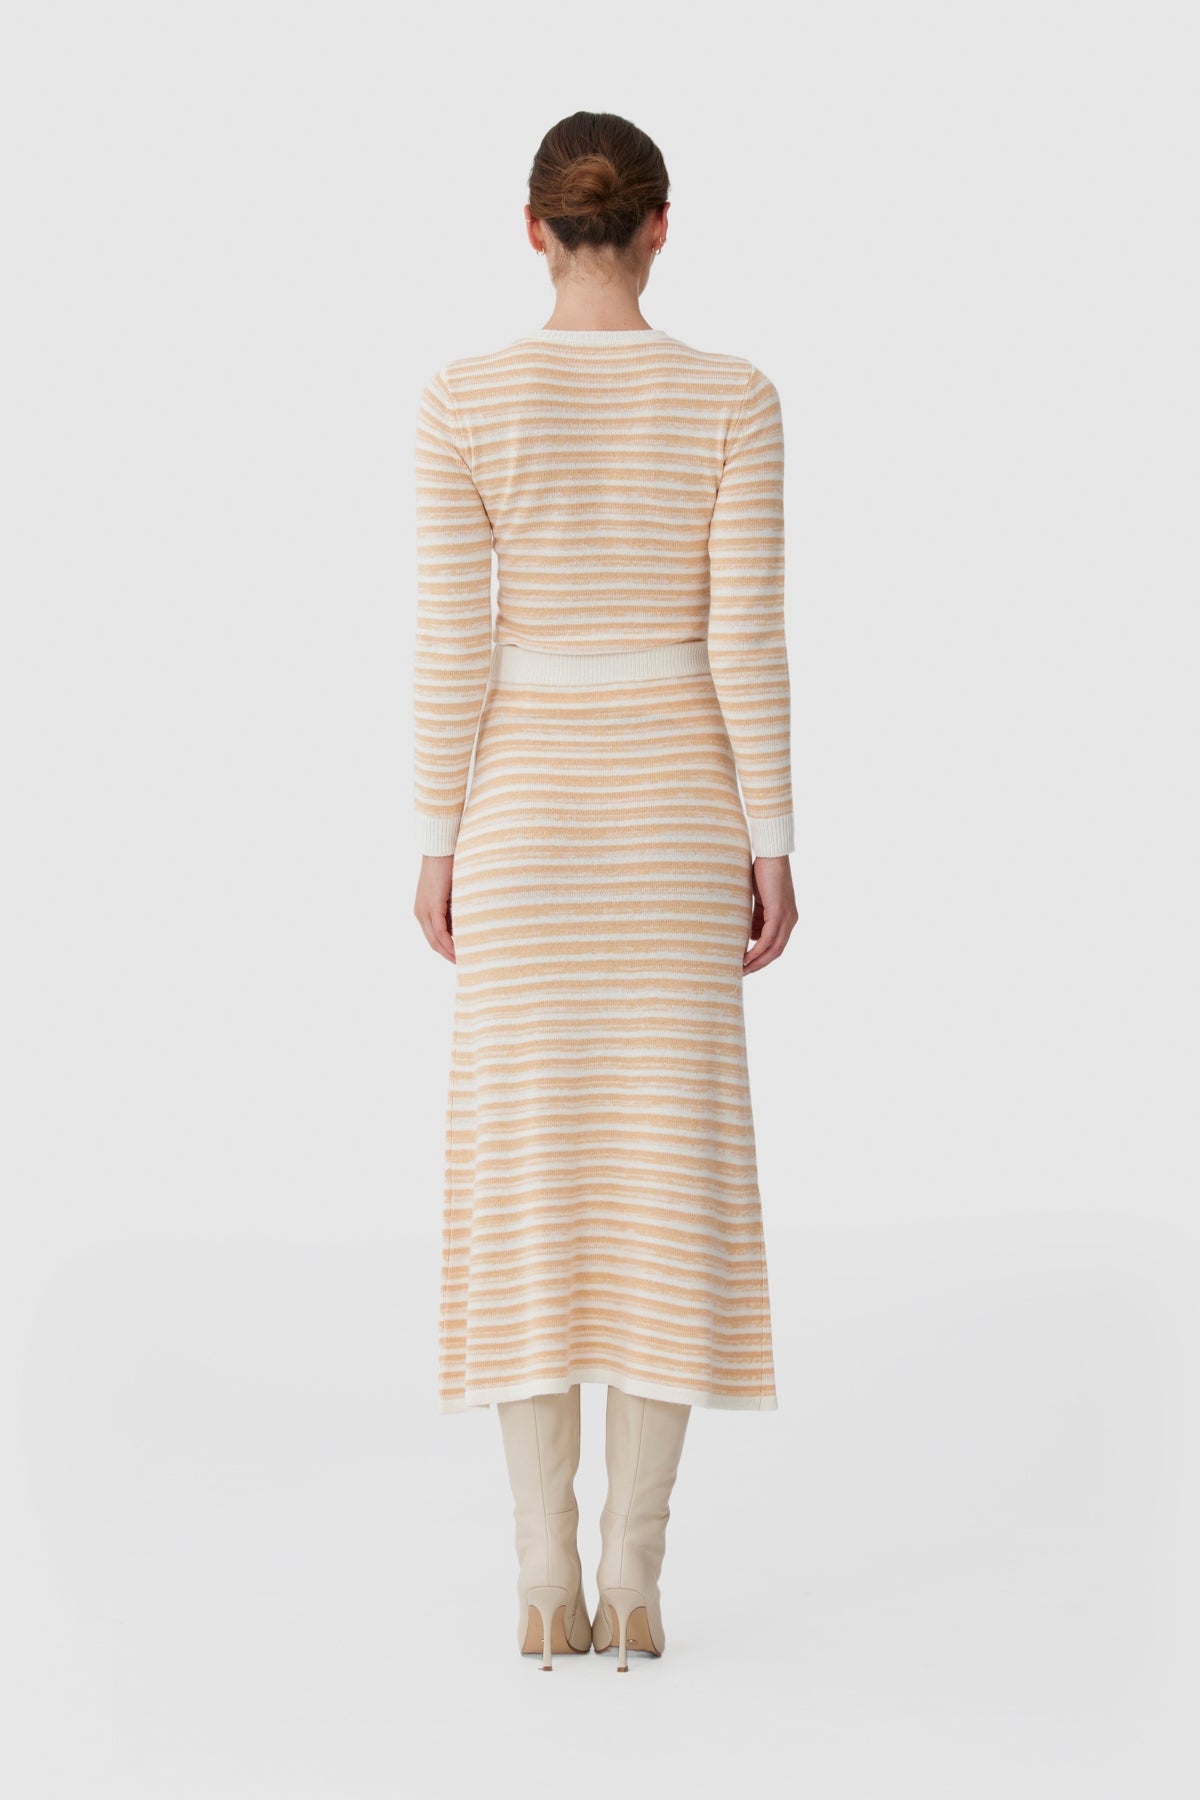 Keepsake - Oceana Knit Skirt - Sand Stripe